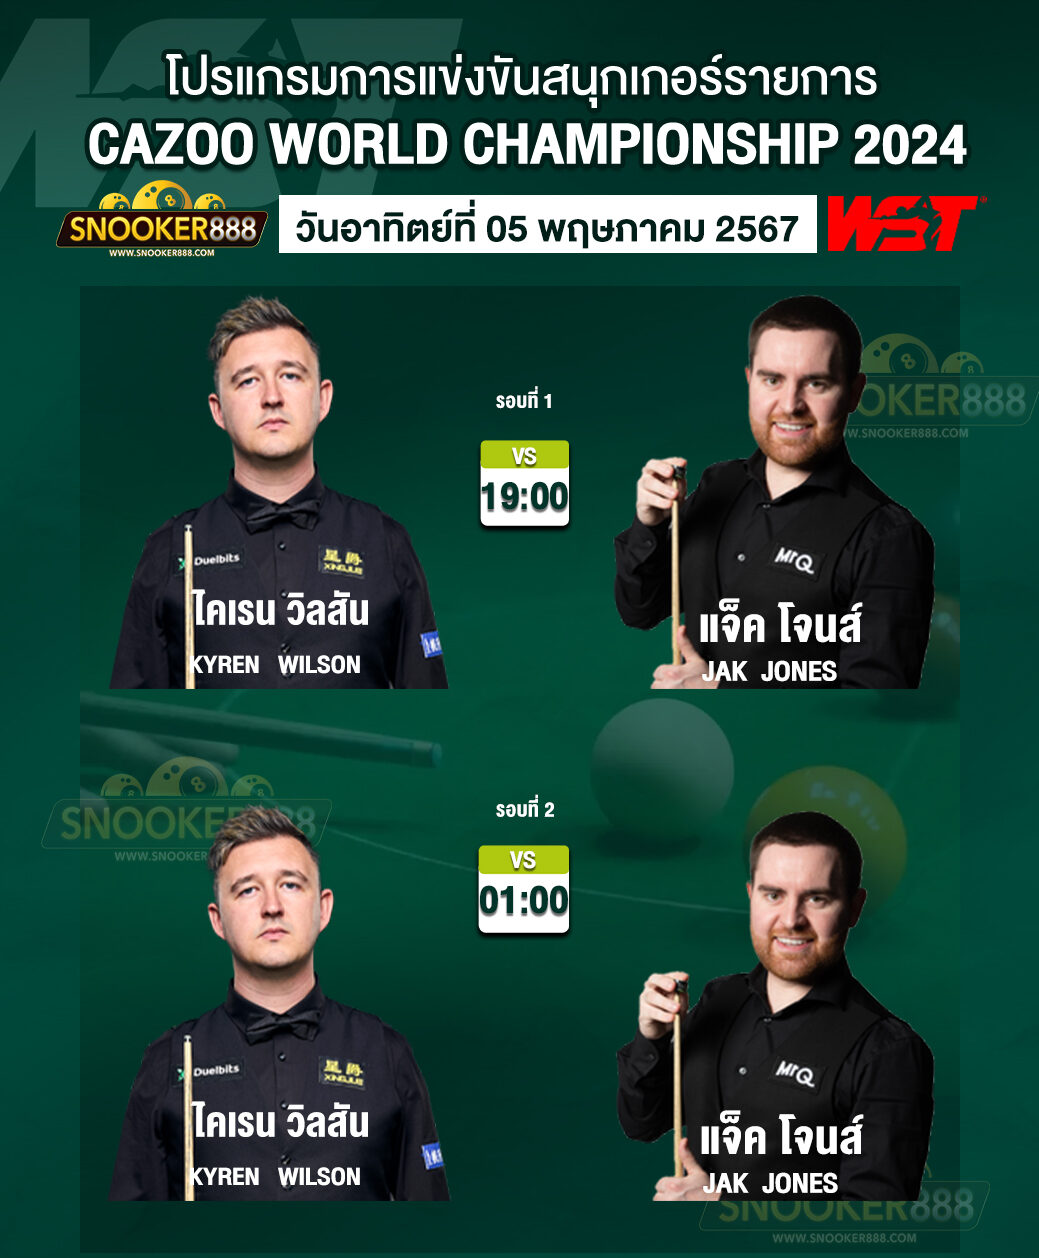 โปรแกรมการแข่งขันสนุกเกอร์ CAZOO WORLD CHAMPIONSHIP 2024 วันที่ 5 พ.ค. 67